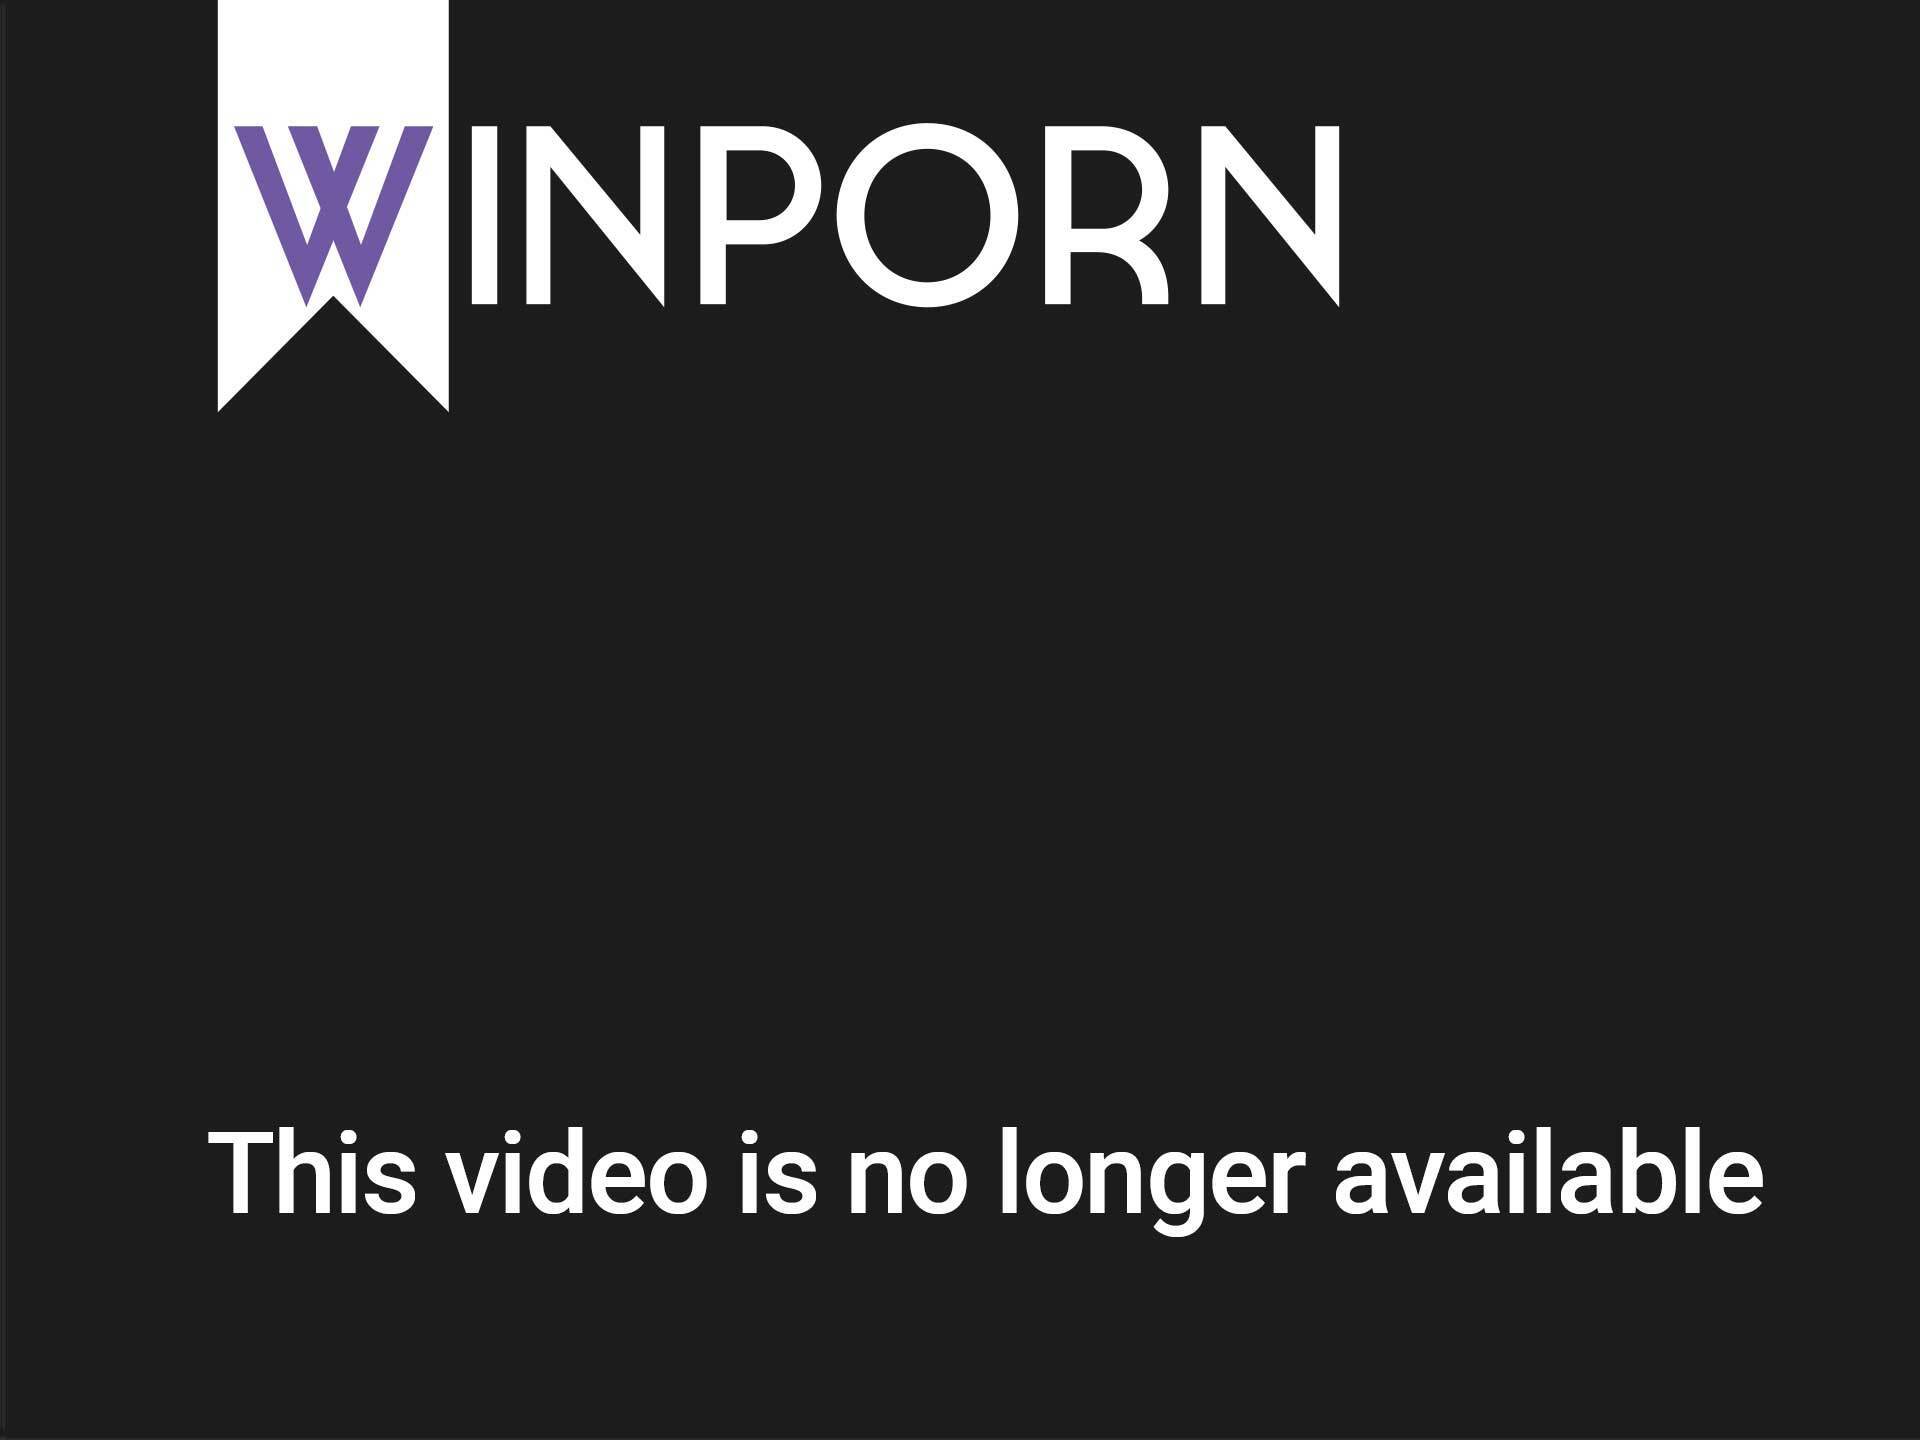 640px x 480px - Download Mobile Porn Videos - Webcam Masturbation Free Webcam Porn Video -  564641 - WinPorn.com